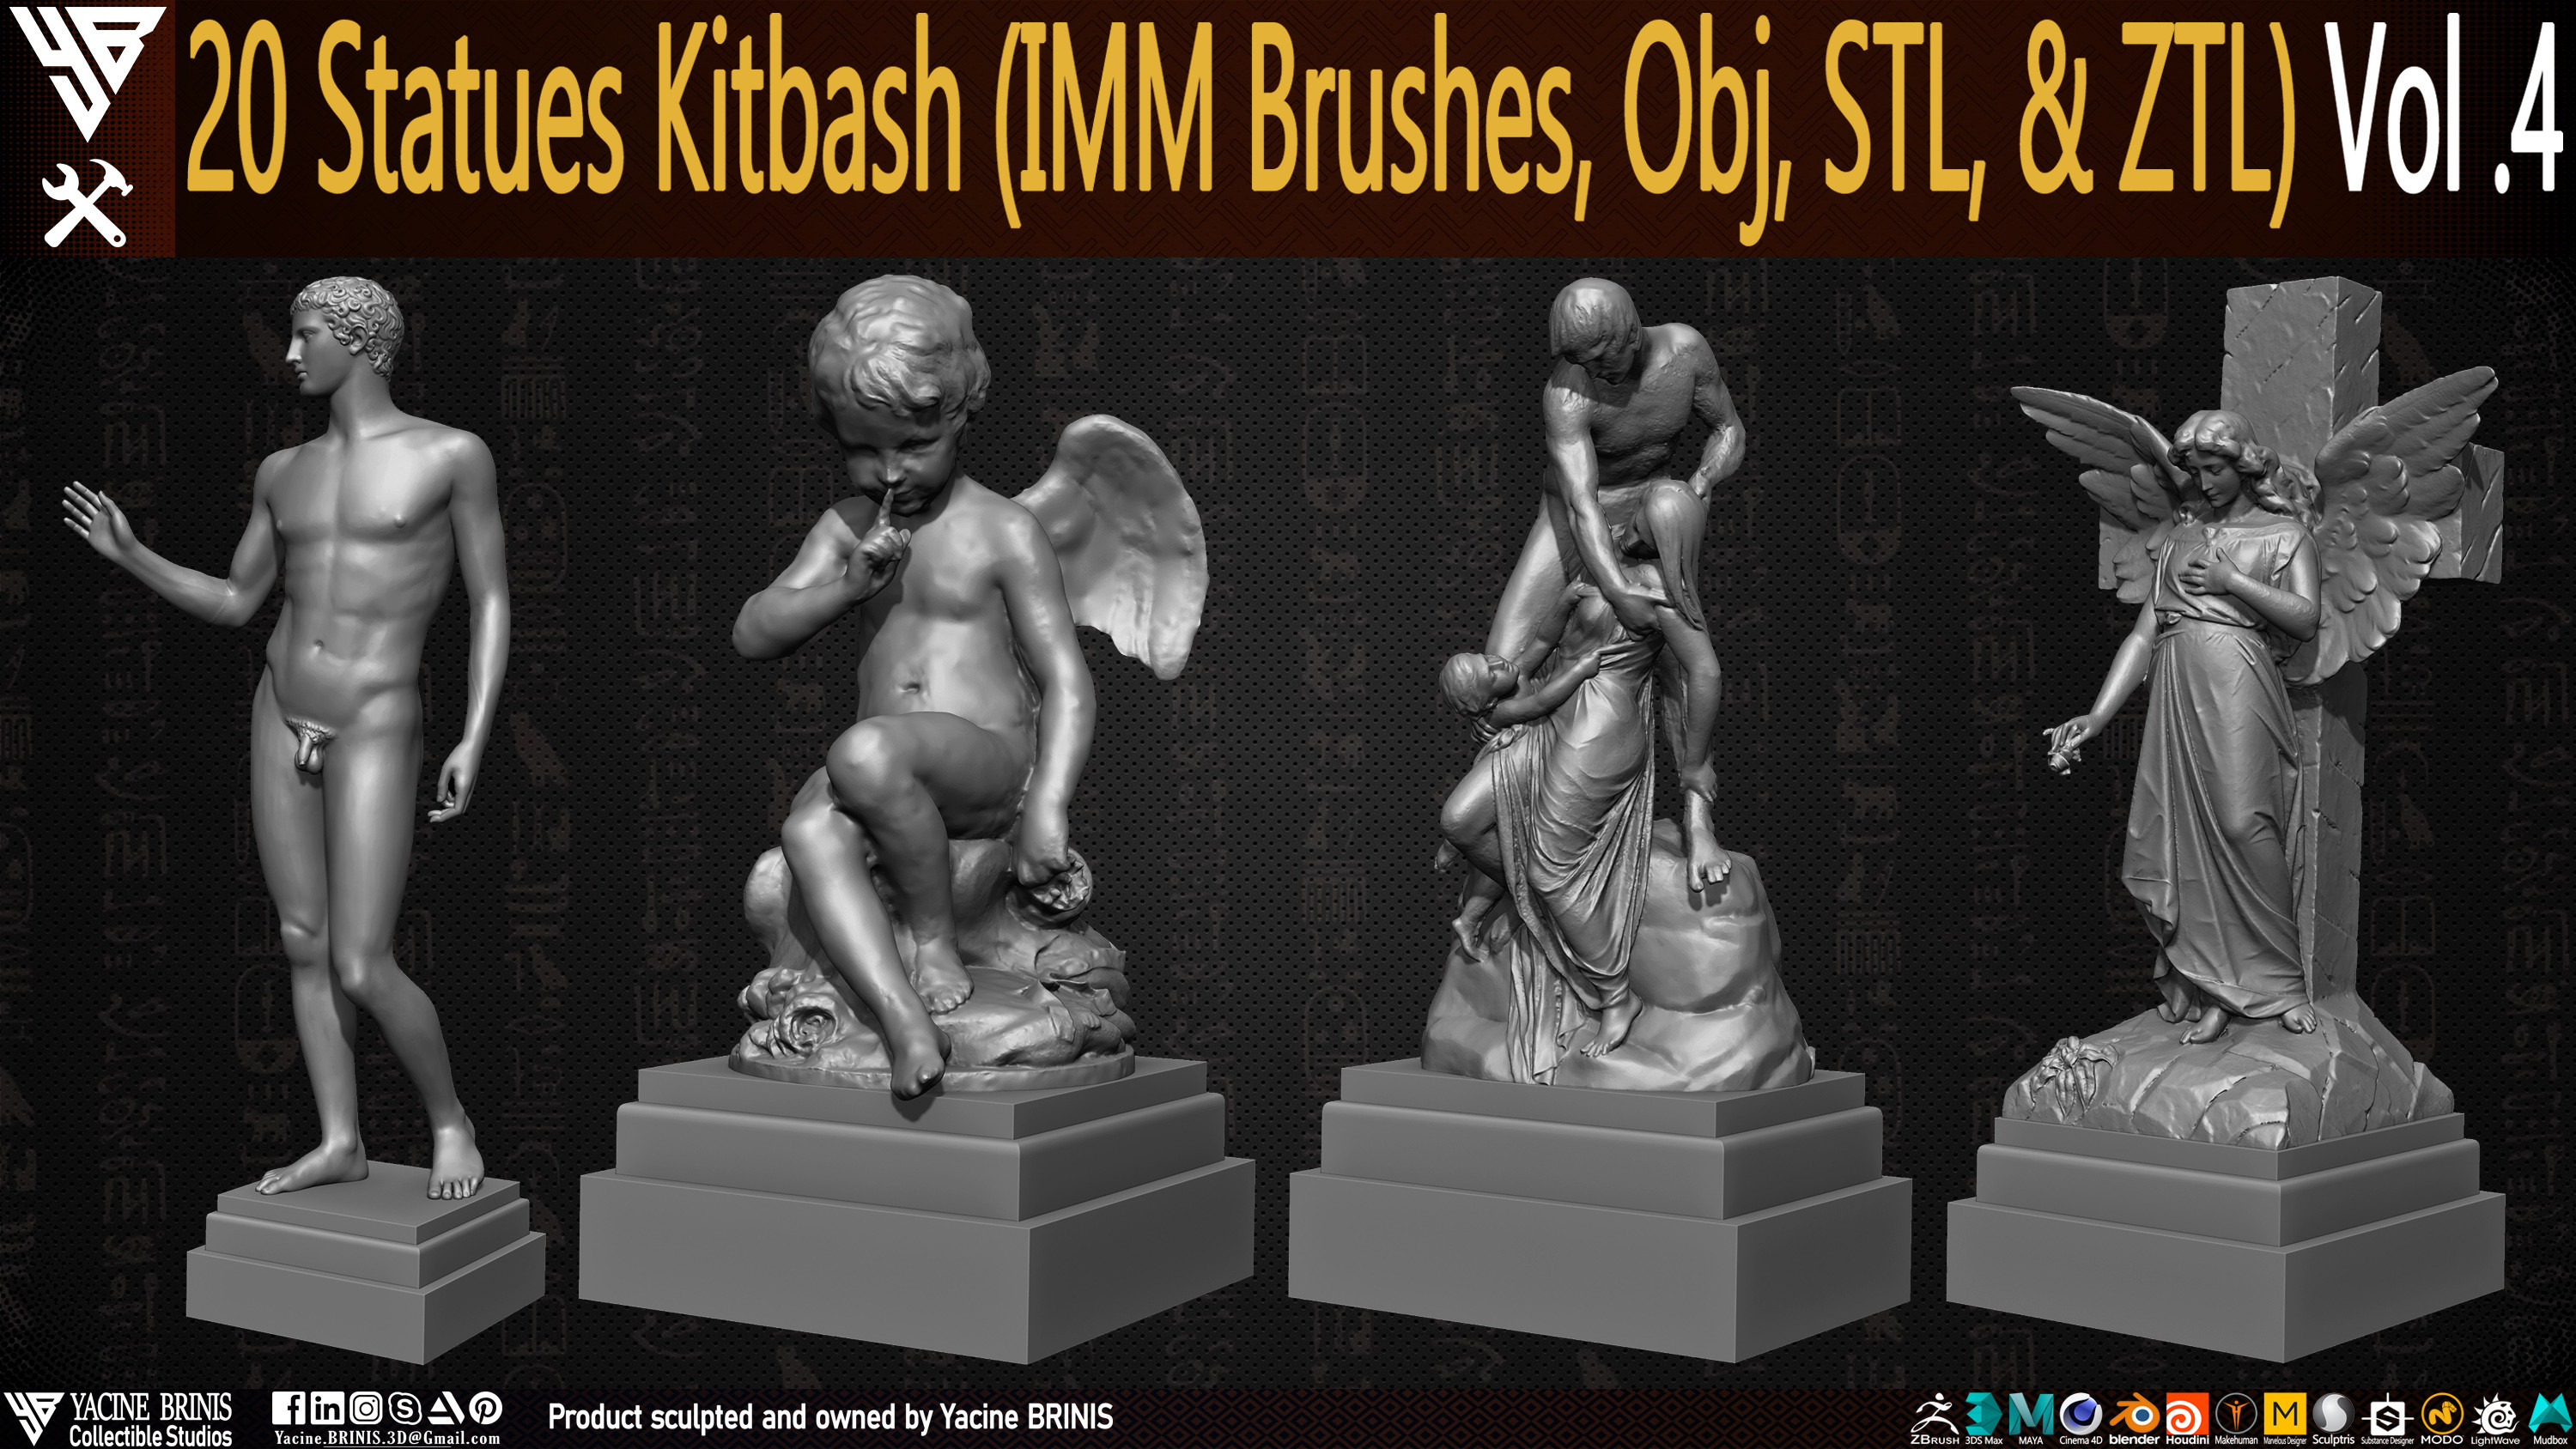 Statues Kitbash by yacine brinis Set 18